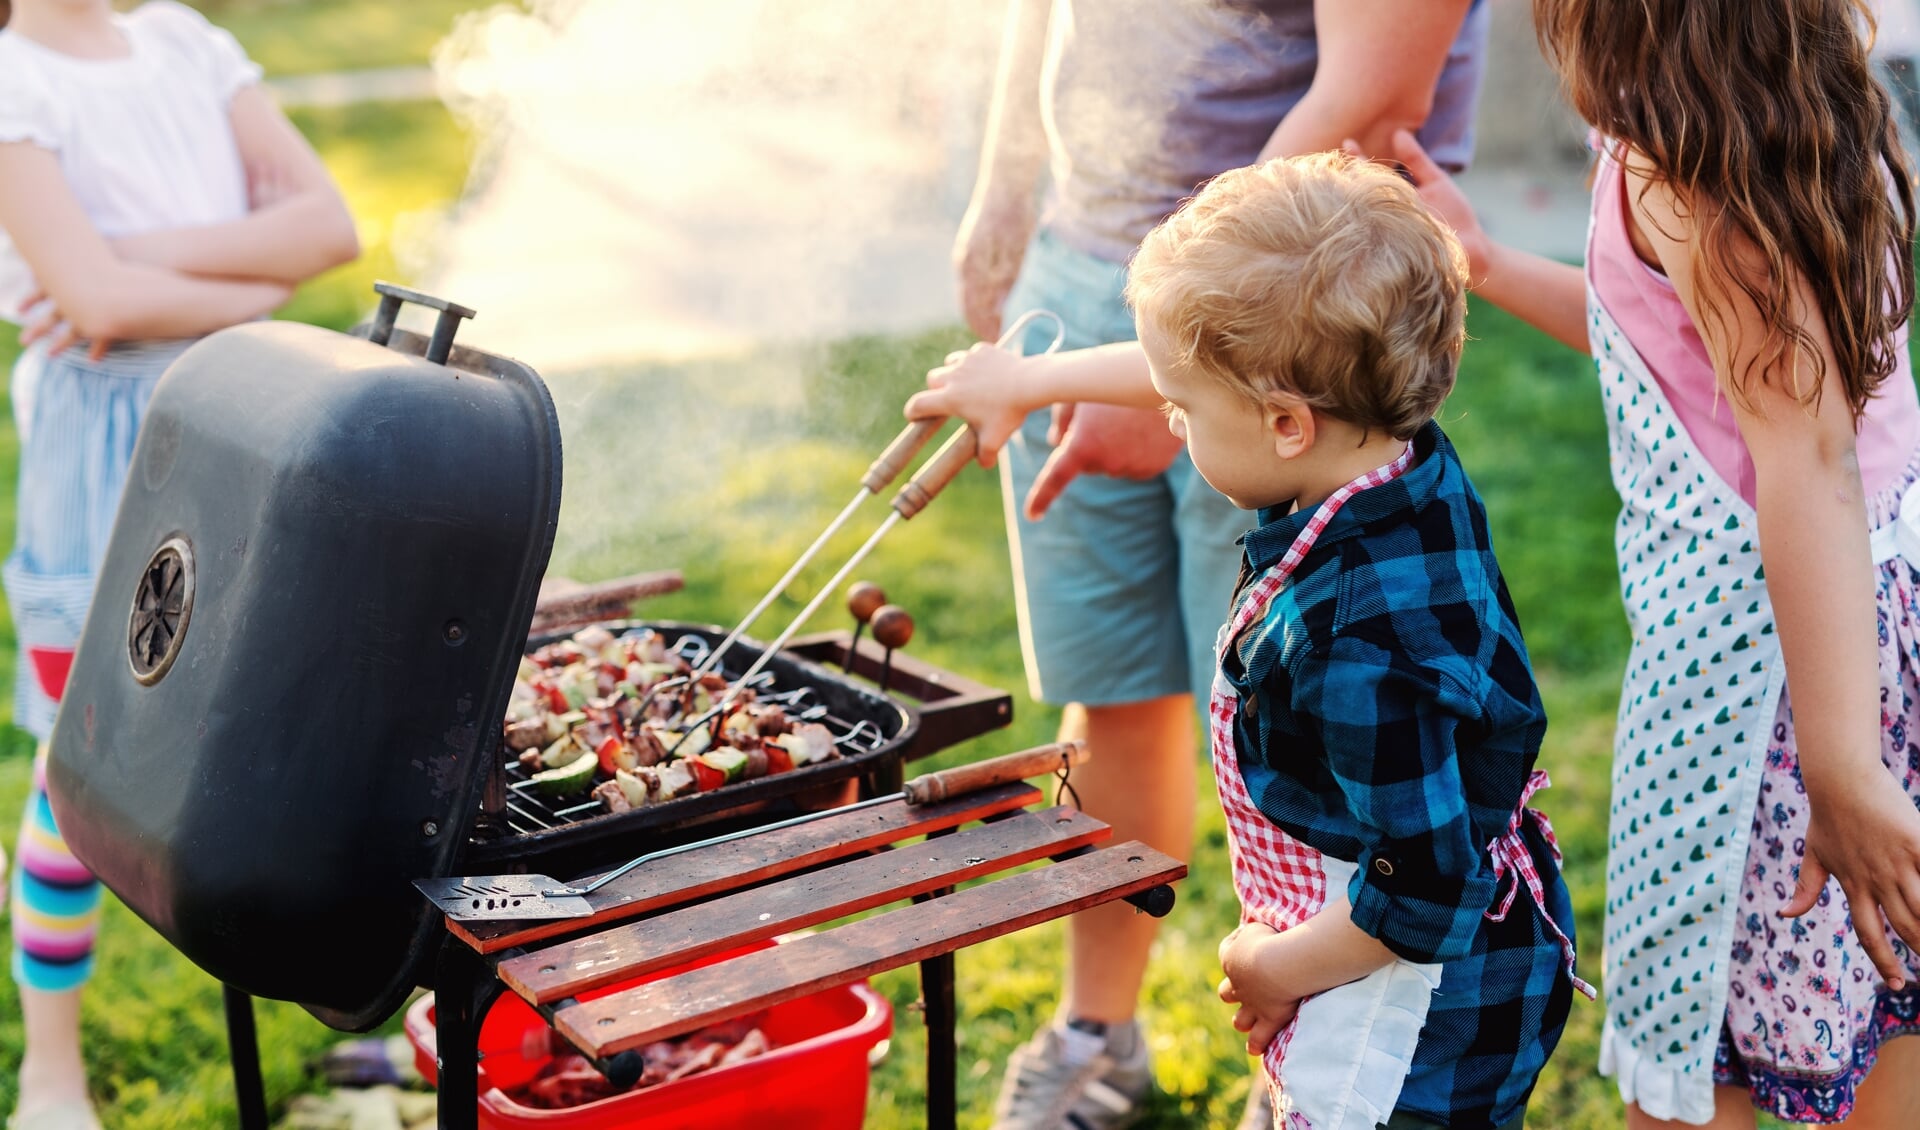 Let ook zeker goed op kinderen rond de barbecue; ze kunnen snel gewond raken of een barbecue omver lopen.